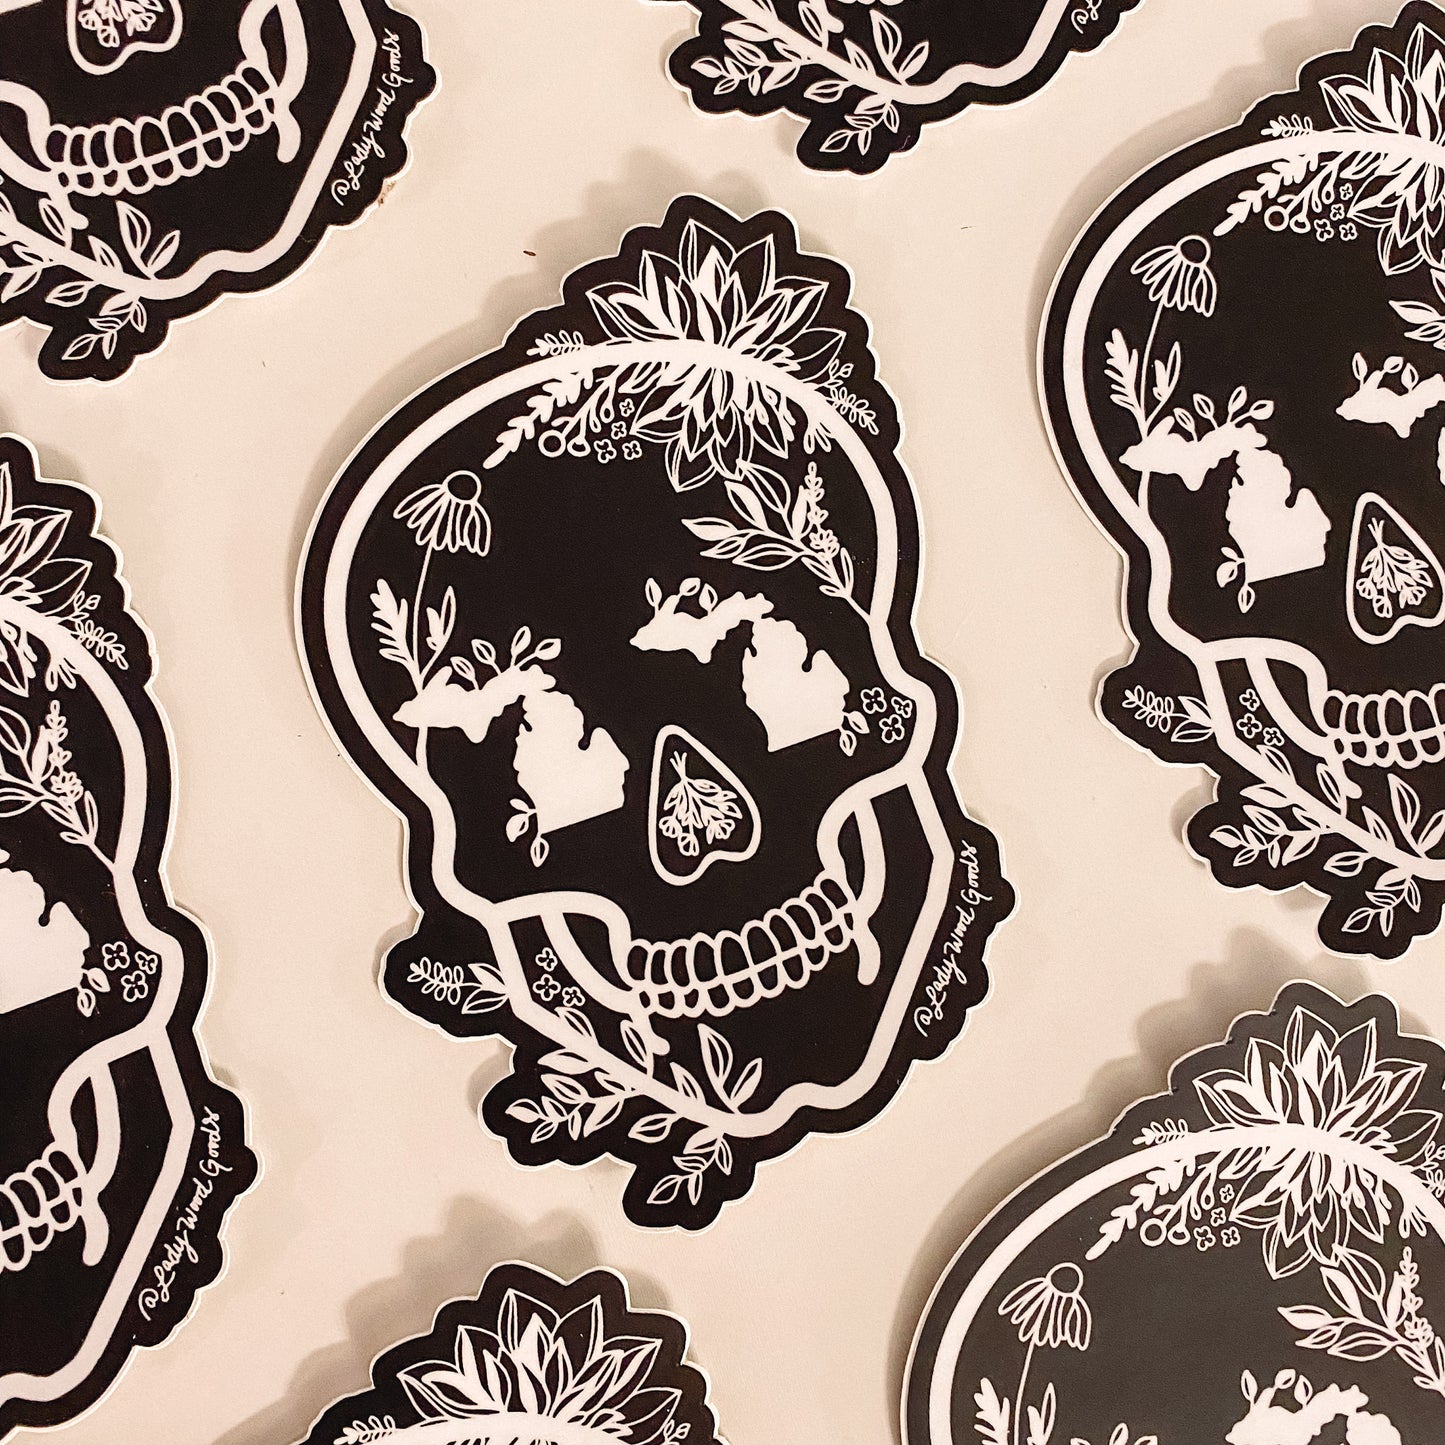 Black + White Mi Skull sticker